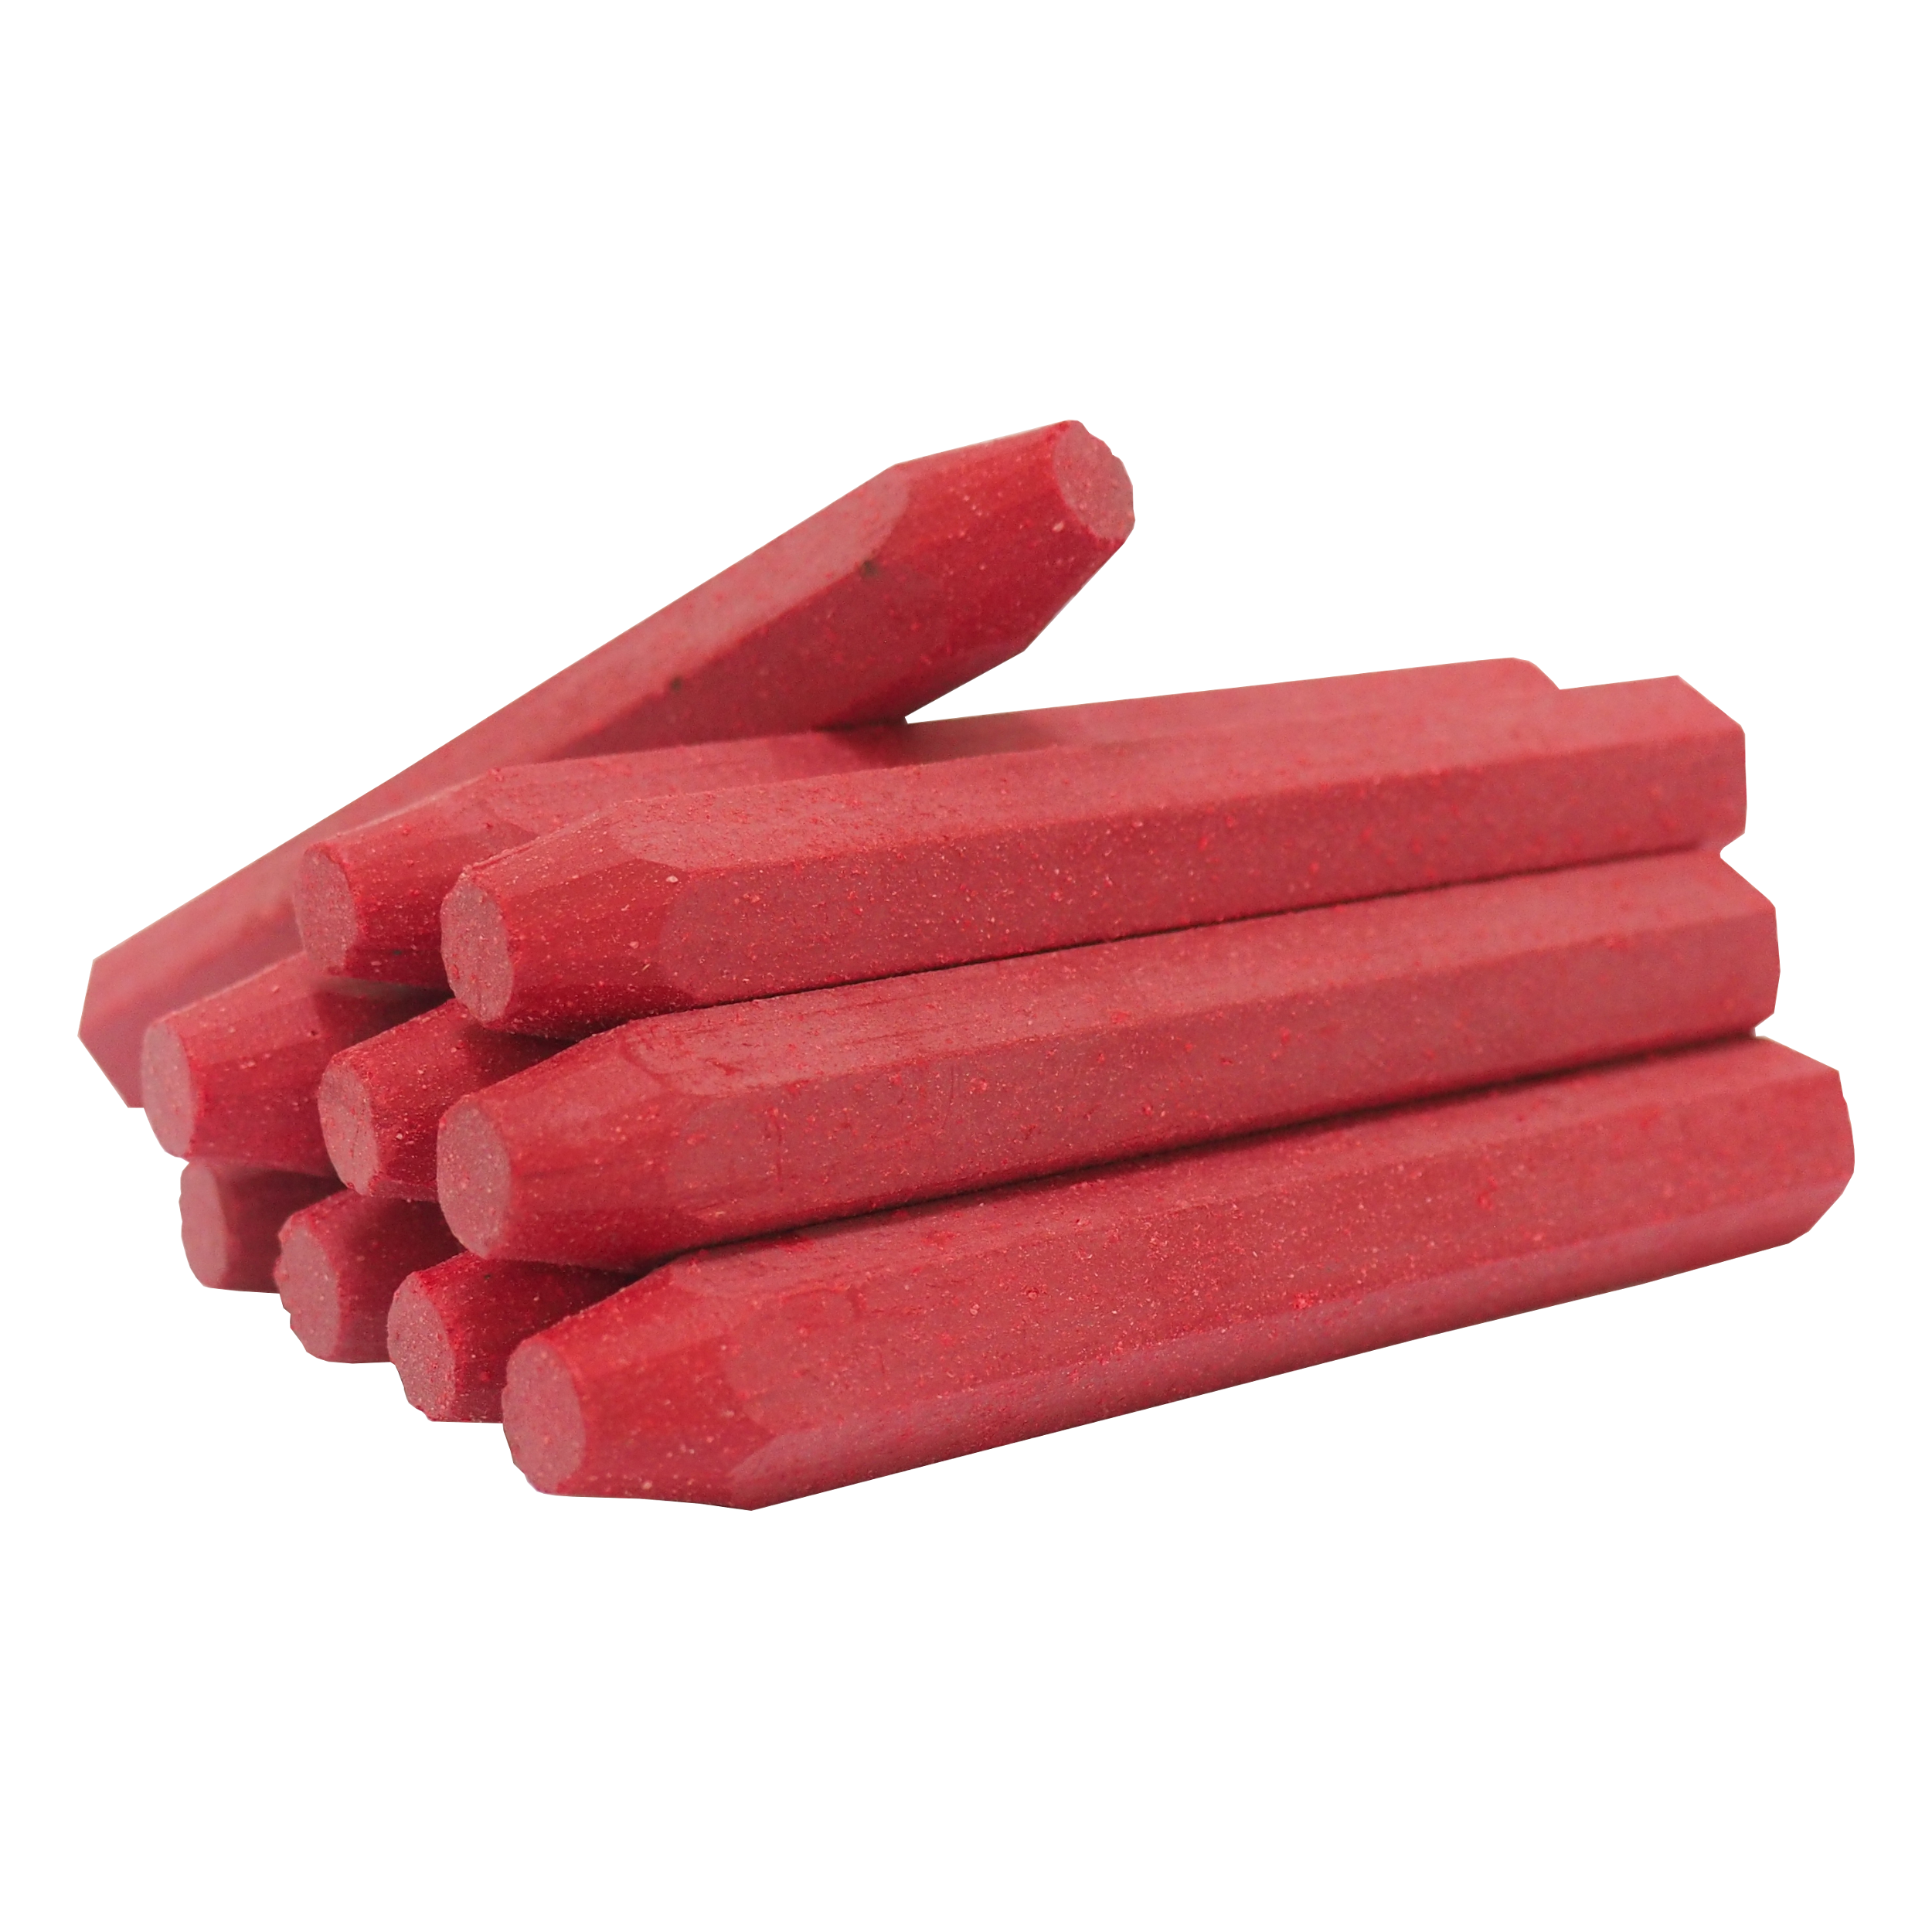 TOPTRADE tužka značkovač, červená,  sada 12 ks, 13 x 100 mm - BAZAR - 0.27 Kg TOP Sklad4 600205.01 7